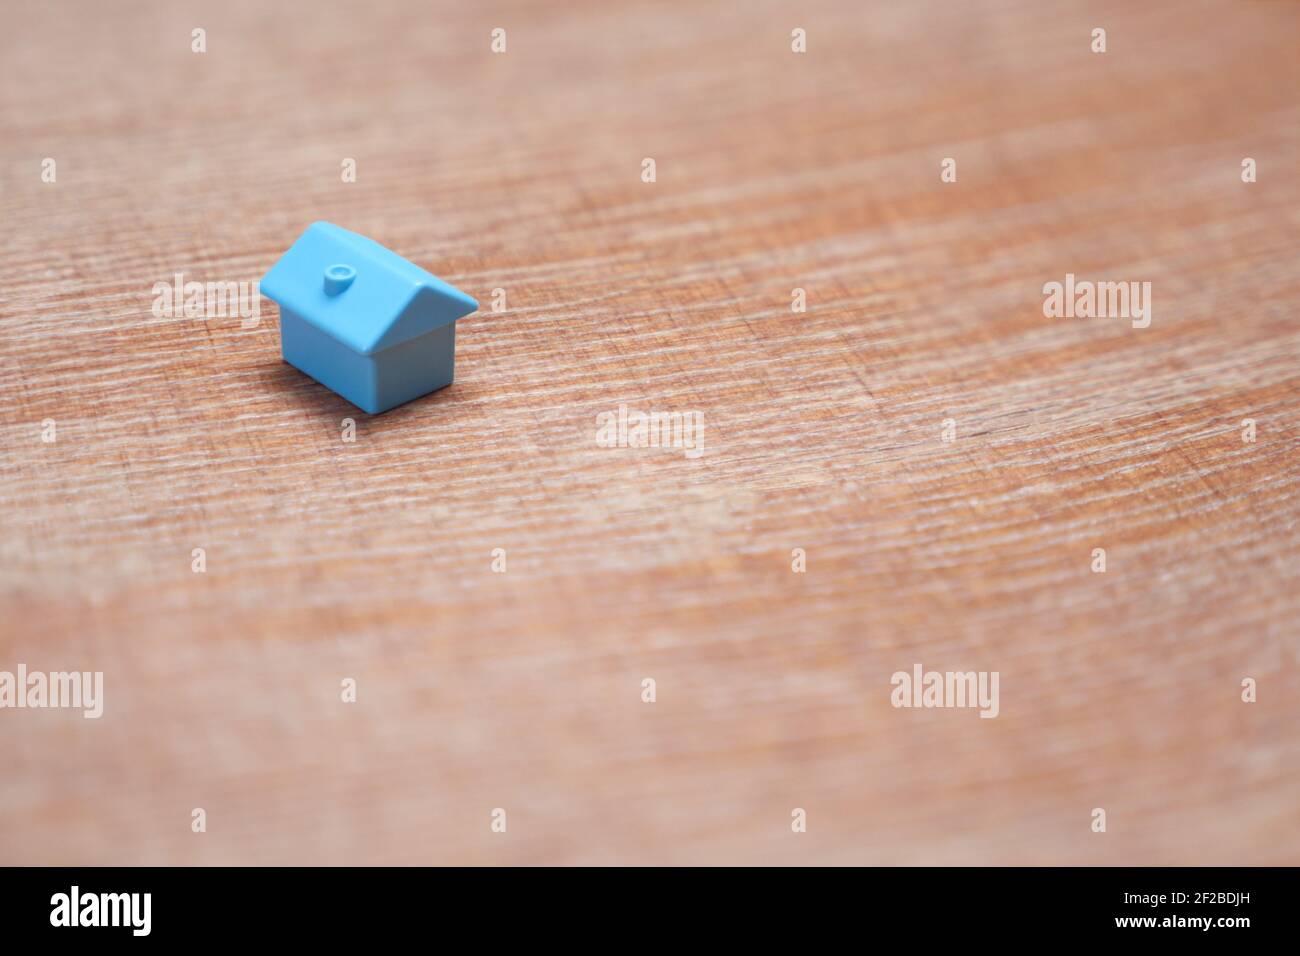 Minimalistisches Design ein einziges Miniaturhaus mit Kopierfläche. Blaues Spielzeug Haus Immobilienmarkt Gehäuse Hypothekendarlehen. Symbol des Hauses auf Holz Hintergrund Stockfoto